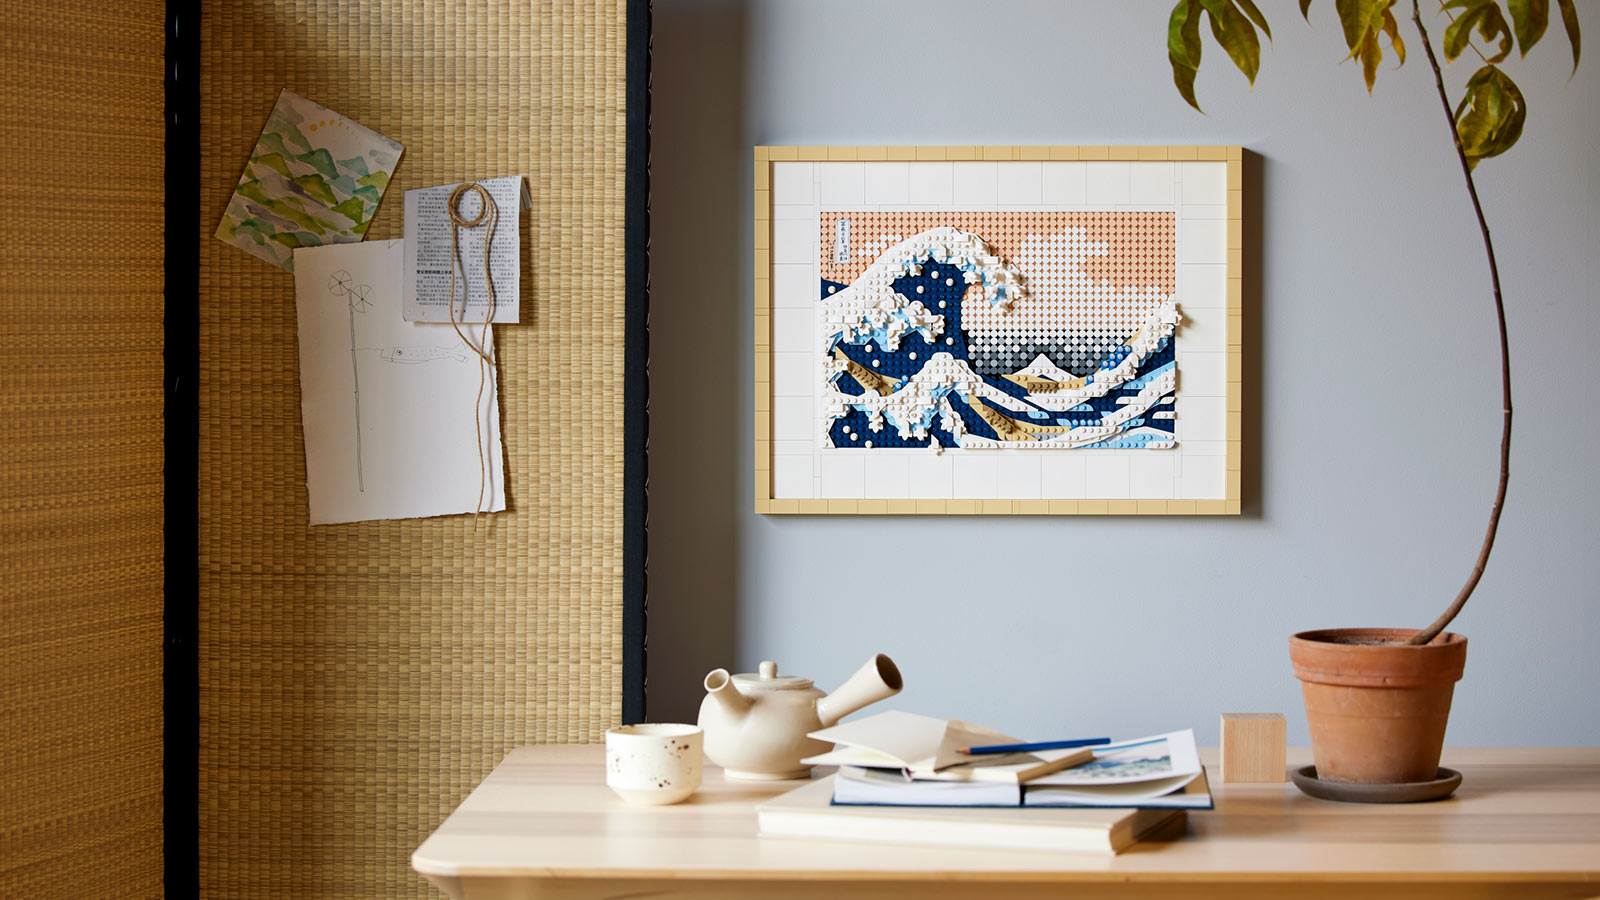 LEGO Hokusai – The Great Wave